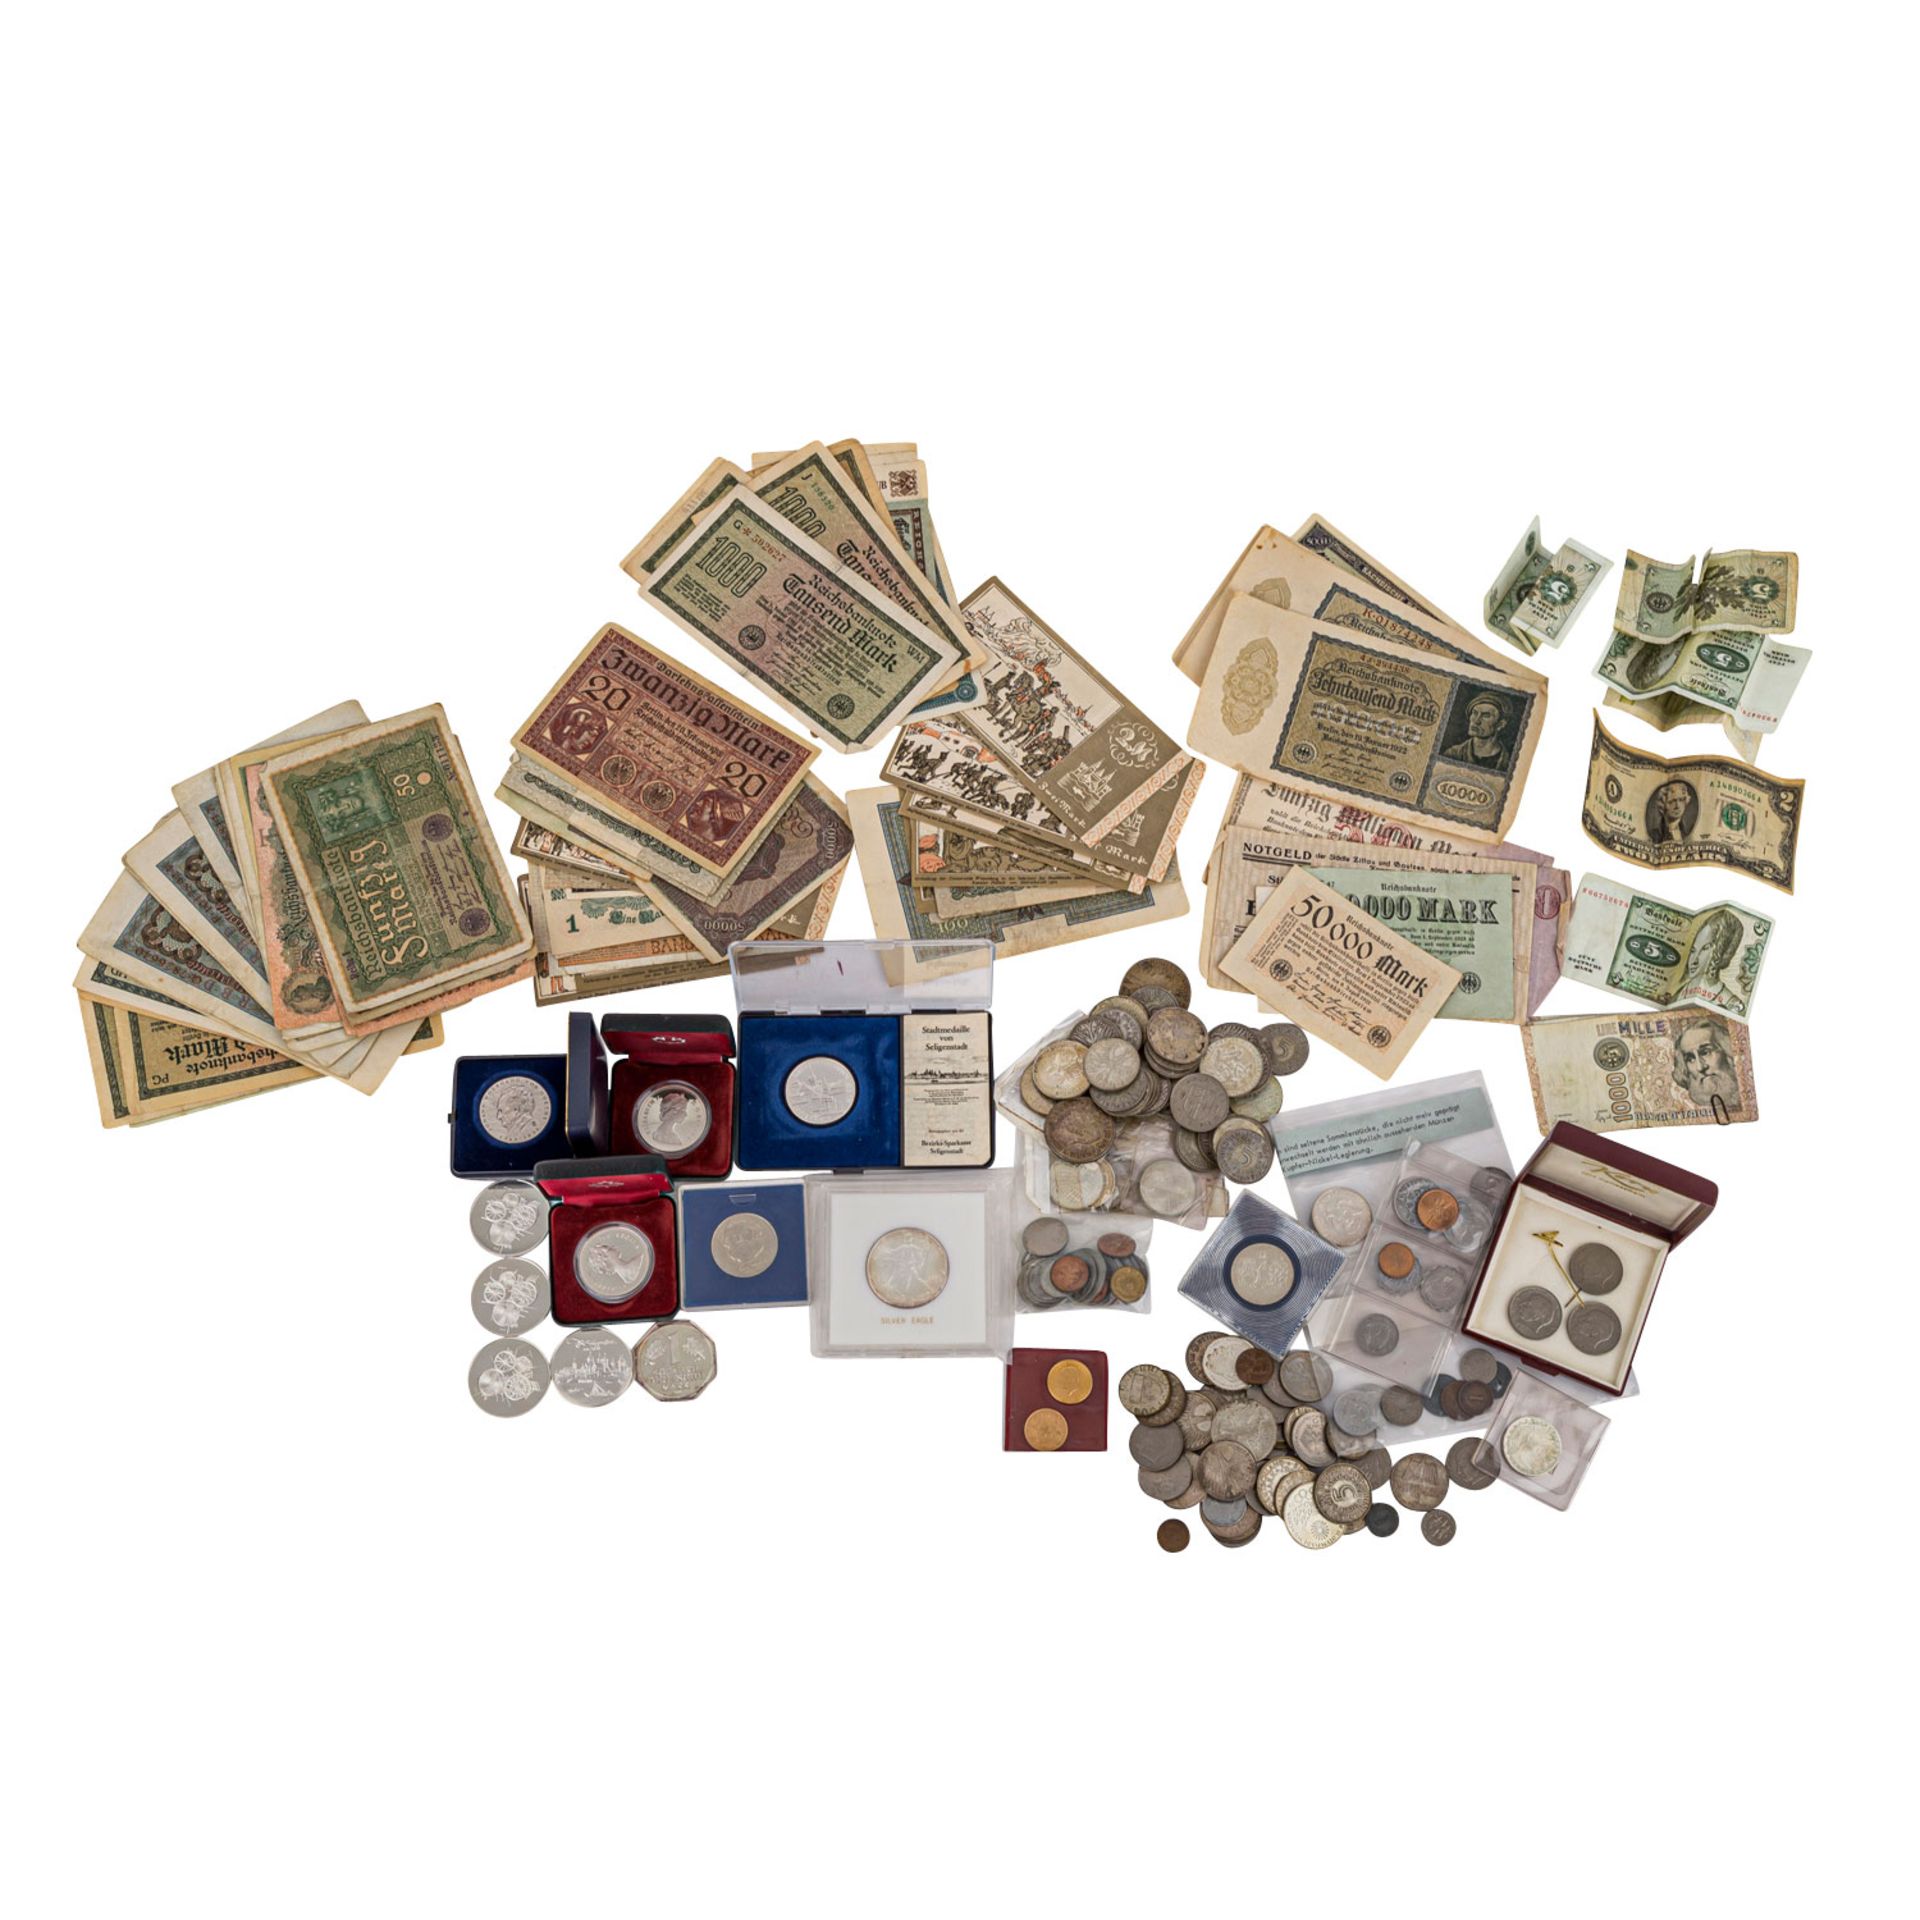 Gemischtes Lot mit Silber und etwas GOLDin Form von Schweuz 20 Franken Vreneli 1935 LB und Türkei